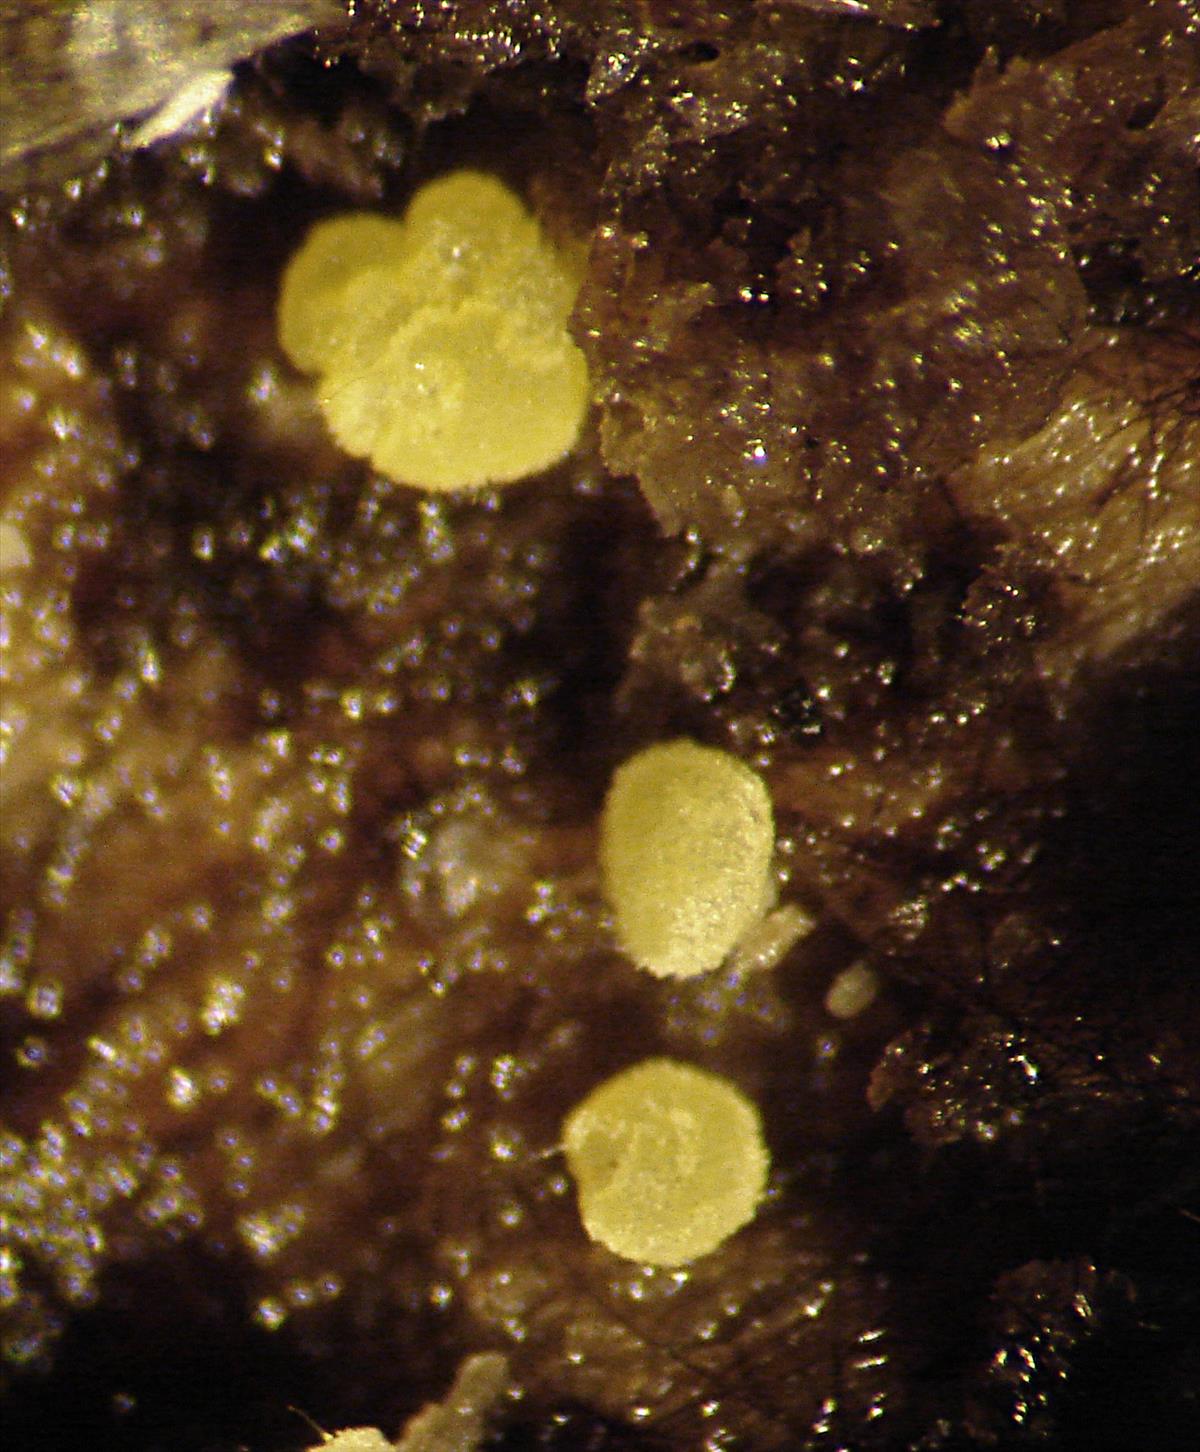 Calycellina ochracea (door Anneke van der Putte)